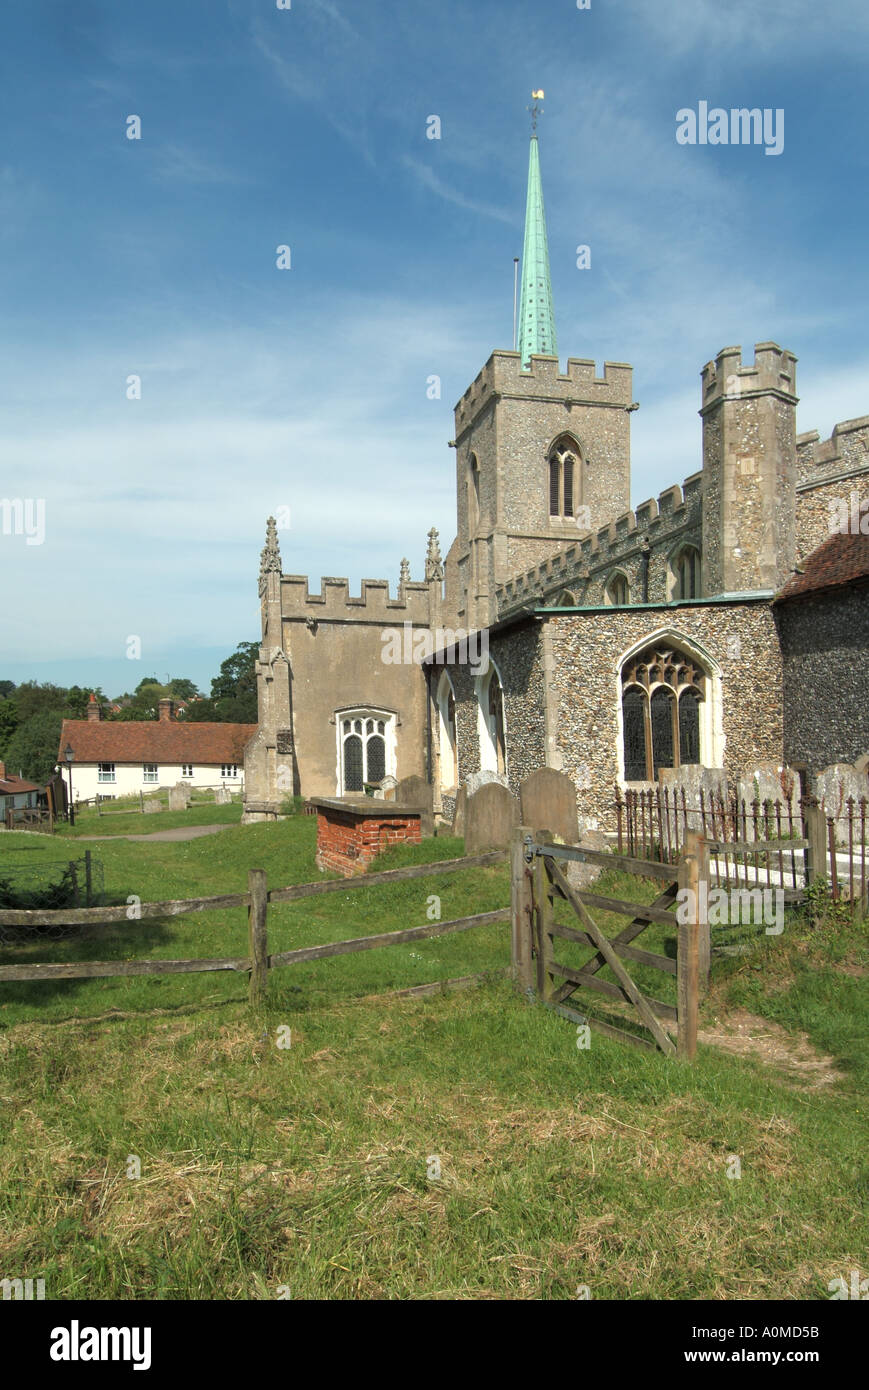 Village Brauauge la tour historique de construction de l'église paroissiale et flèche Brauauge Hertfordshire Angleterre Royaume-Uni Banque D'Images